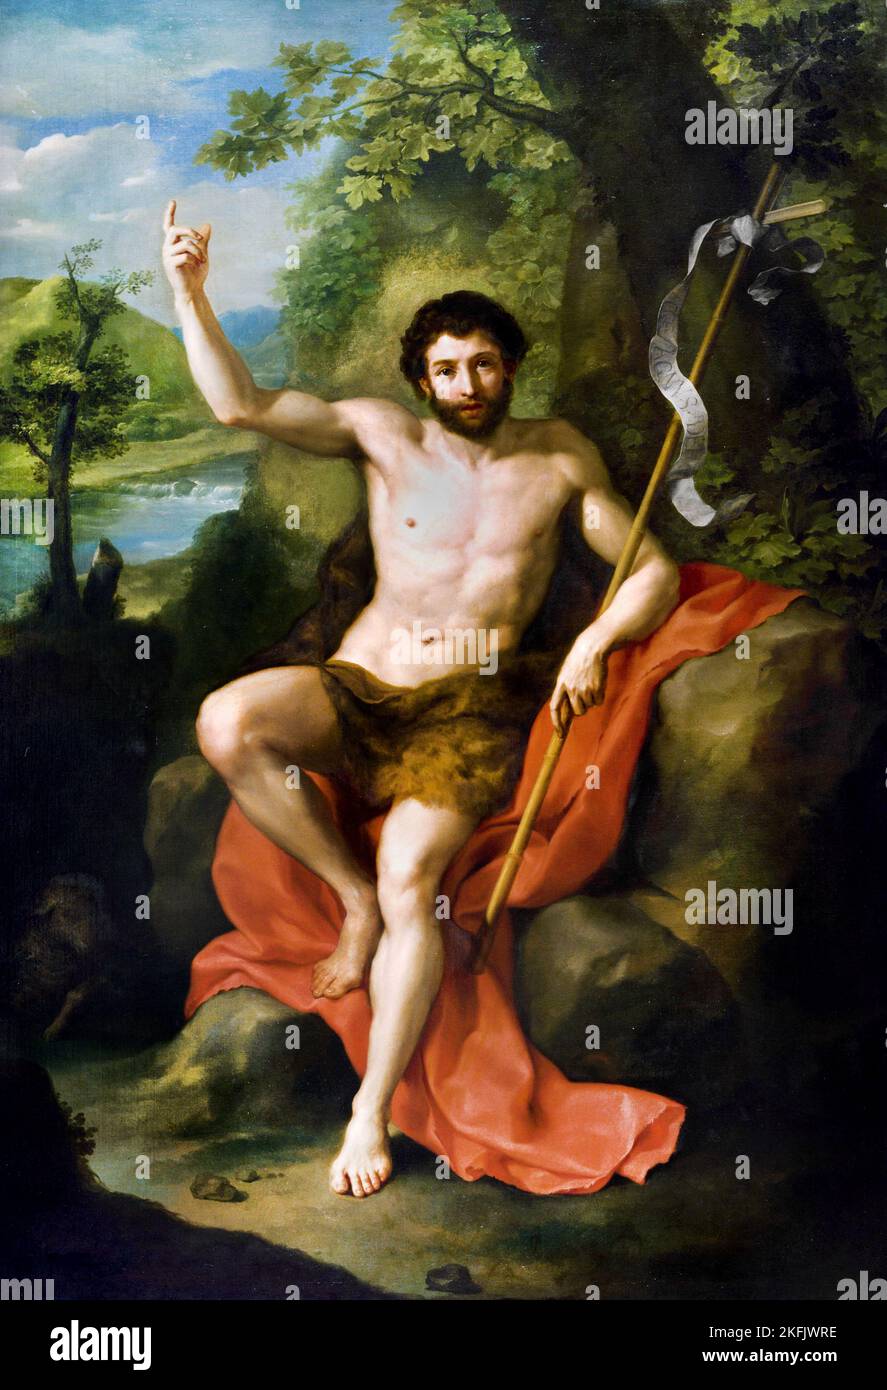 Anton Raphael Mengs ; Saint John The Baptist prêchant dans la nature sauvage ; Circa 1760 ; huile sur toile ; Museum of Fine Arts, Houston, Etats-Unis. Banque D'Images